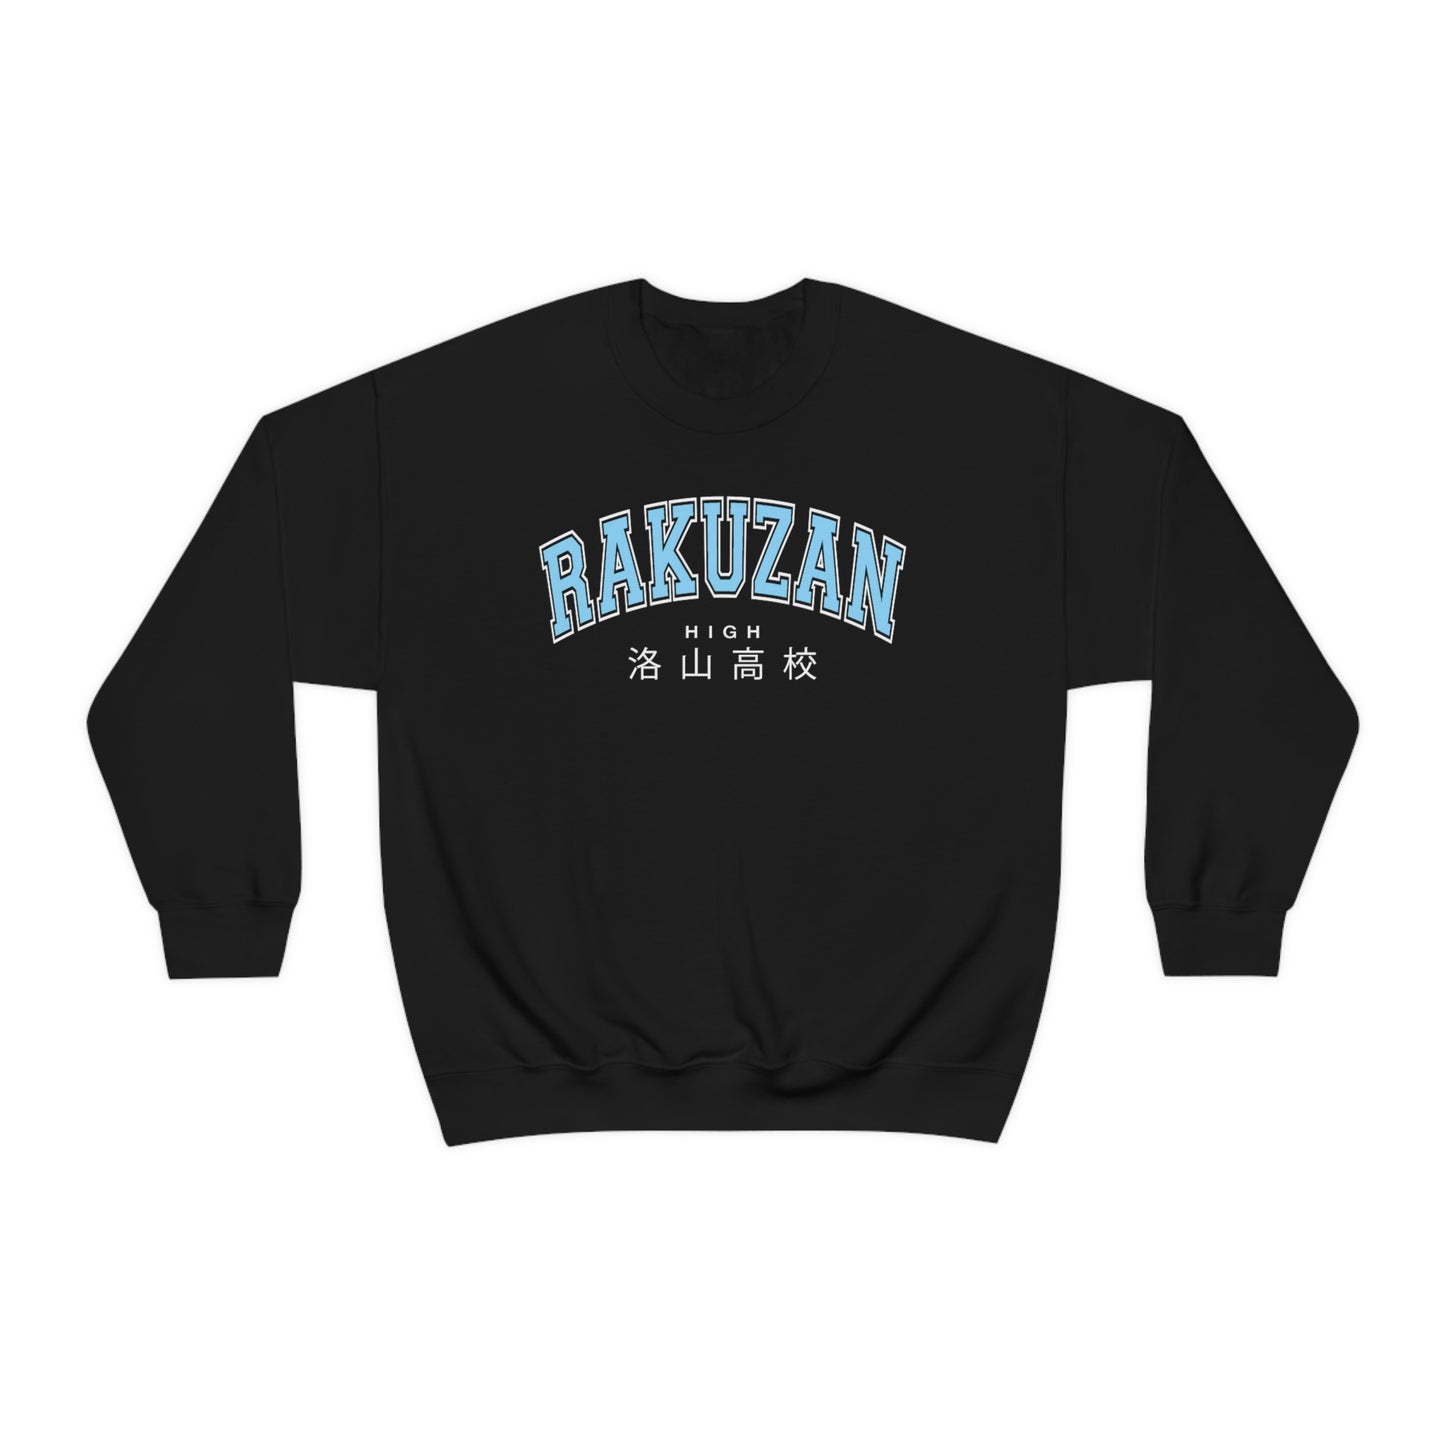 Rakuzan sweatshirt crew neck